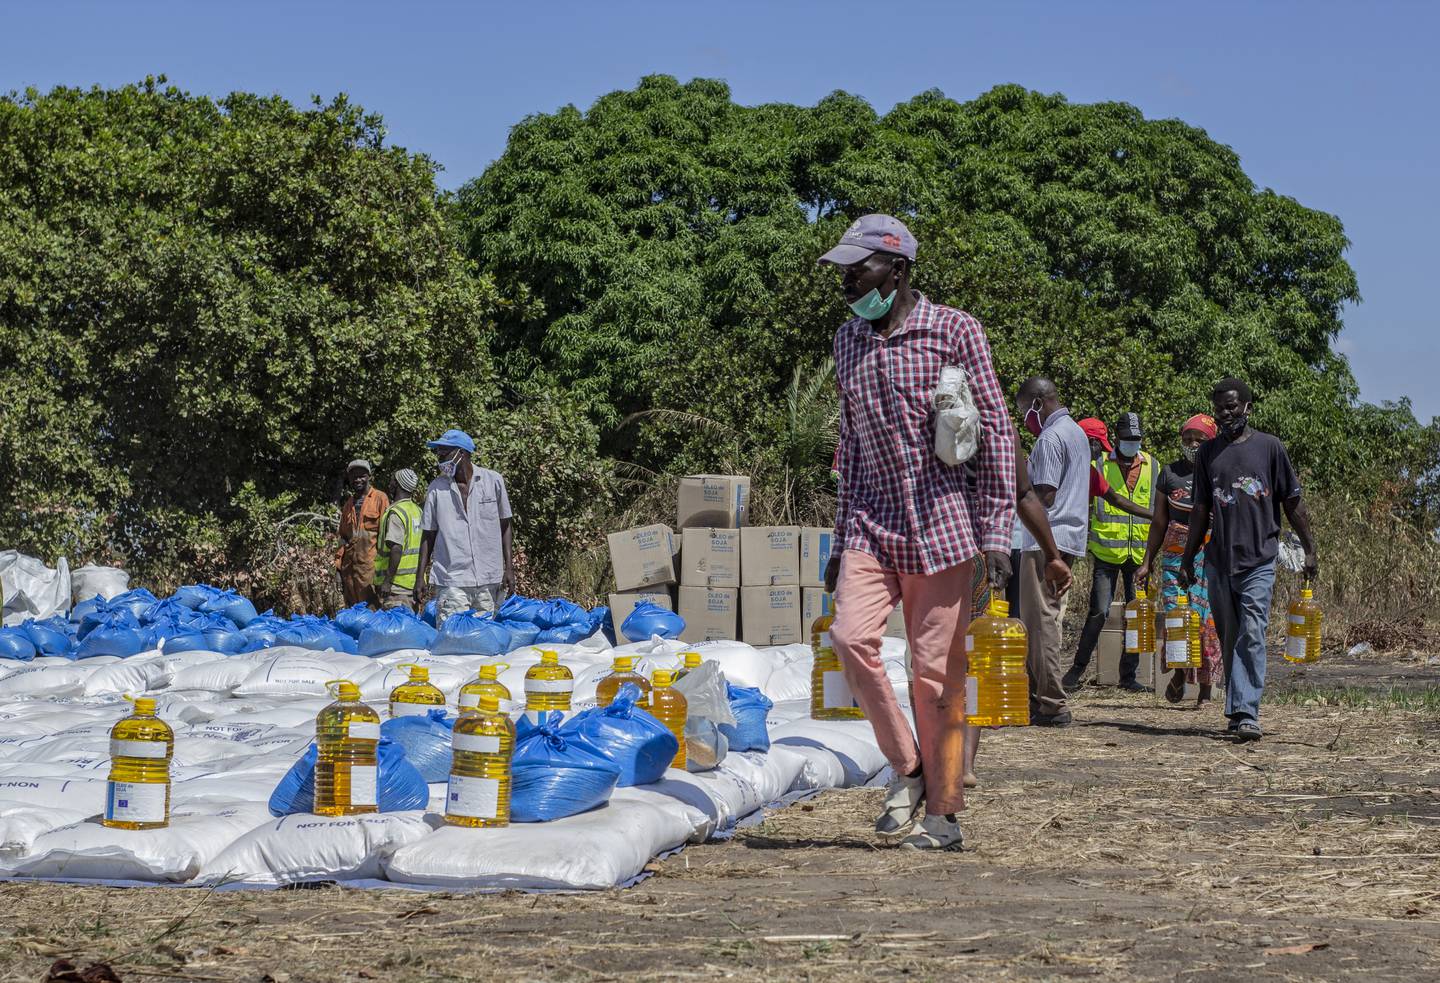 MANGE SLITER: I provinsen Cabo Delgado sprer hungersnøden seg. Omlag 300.000 personer er internt fordrevet, noe som i høst har skapt en akutt humanitær situasjon i regionen.